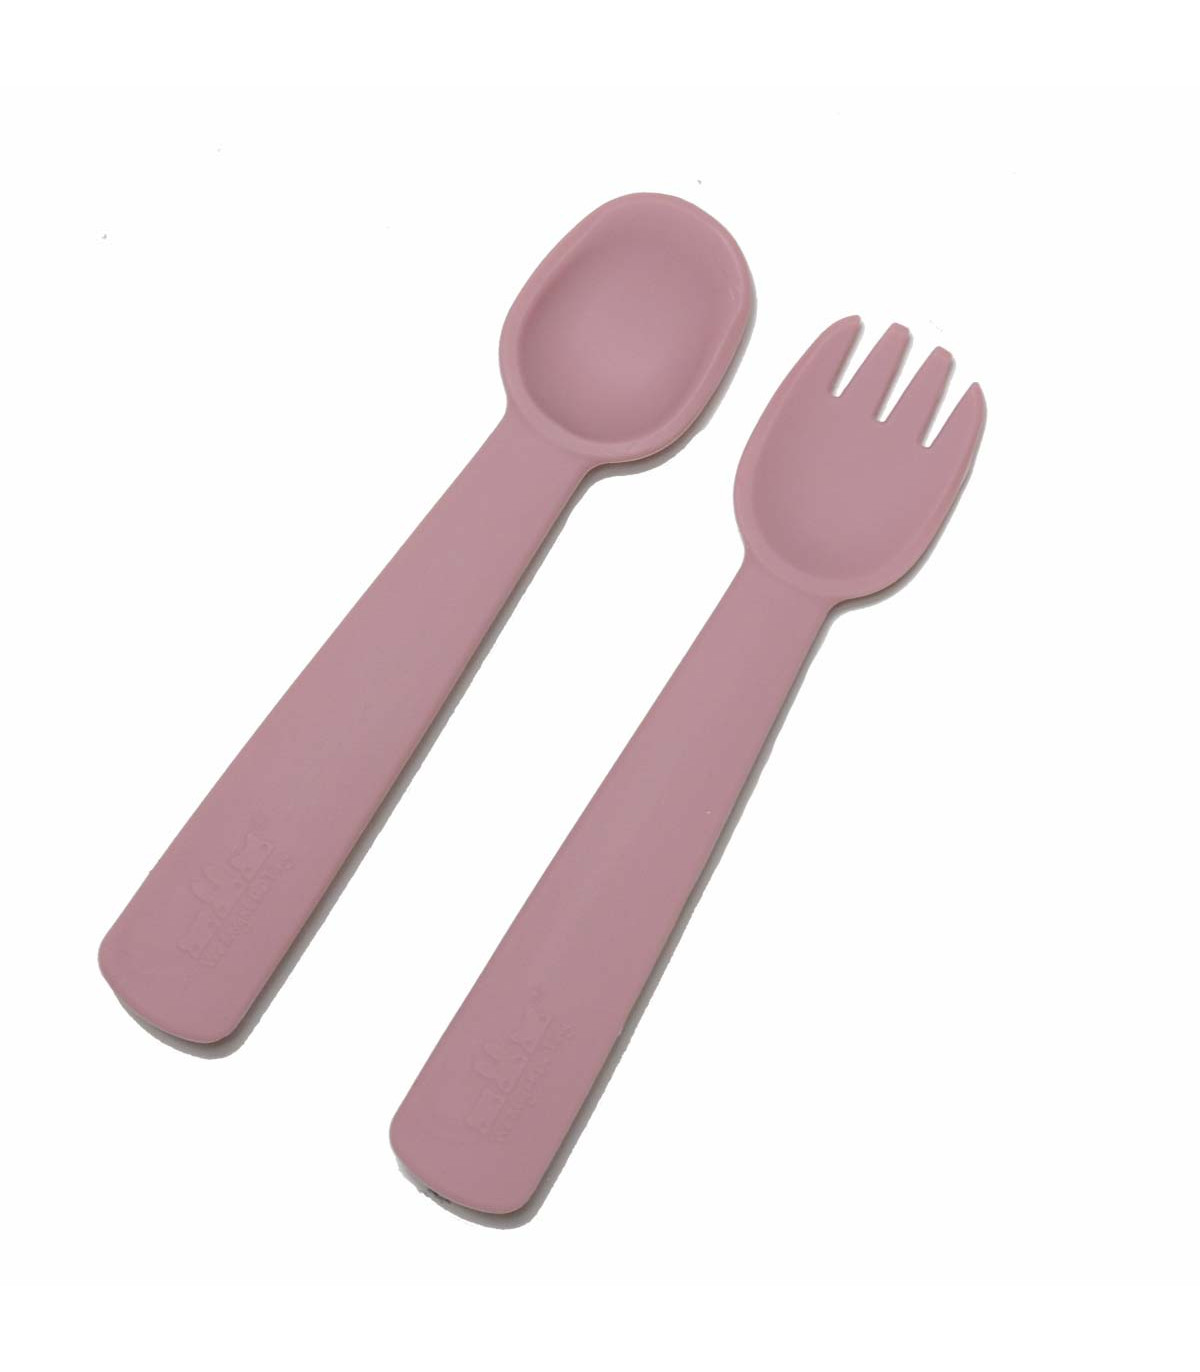 https://takaterra.com/3131-superlarge_default/feedie-fork-spoon-dusty-rose.jpg